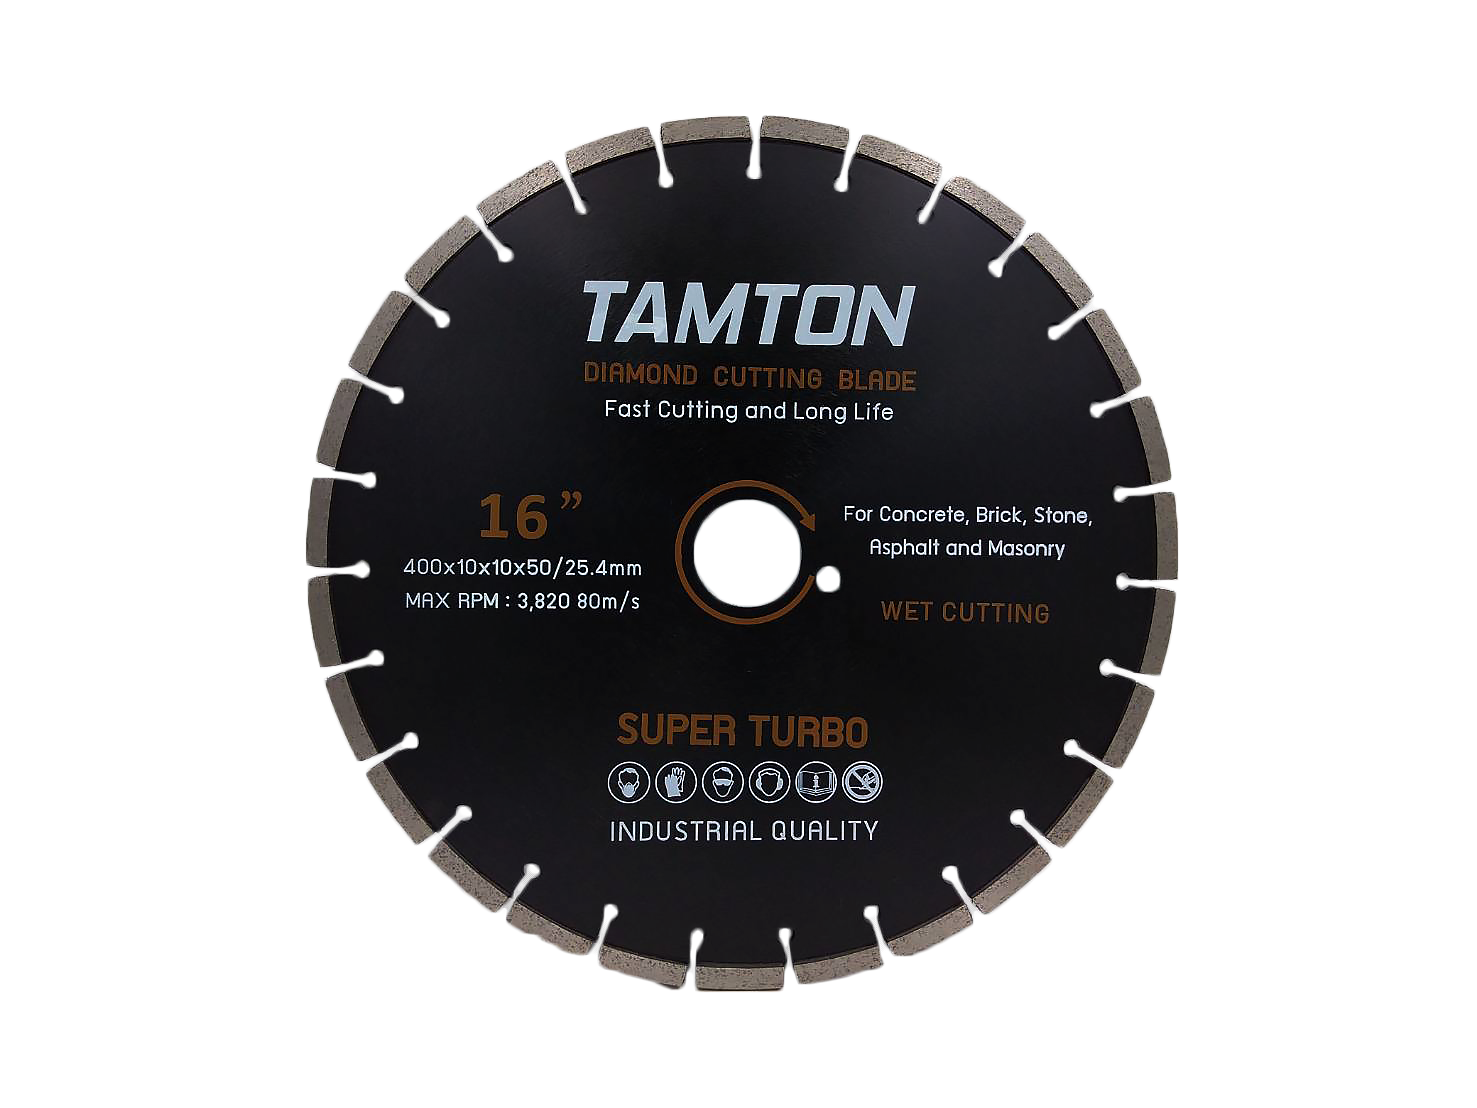 ใบเพชรตัดคอนกรีต TAMTON 16" หนา 10 mm